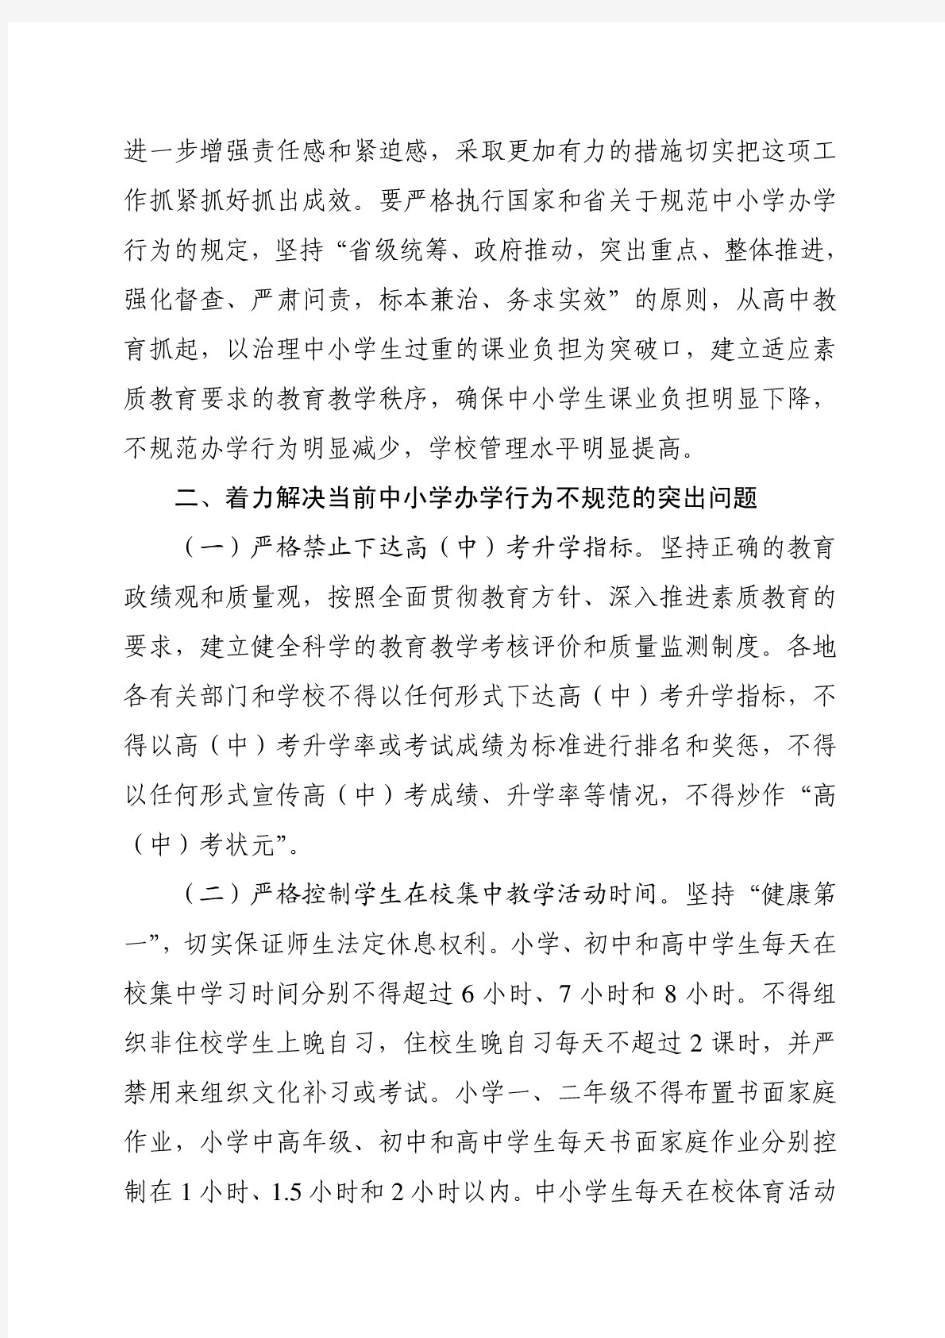 江苏省教育厅红头文件——关于进一步规范中小学办学行为深入实施素质教育的意见